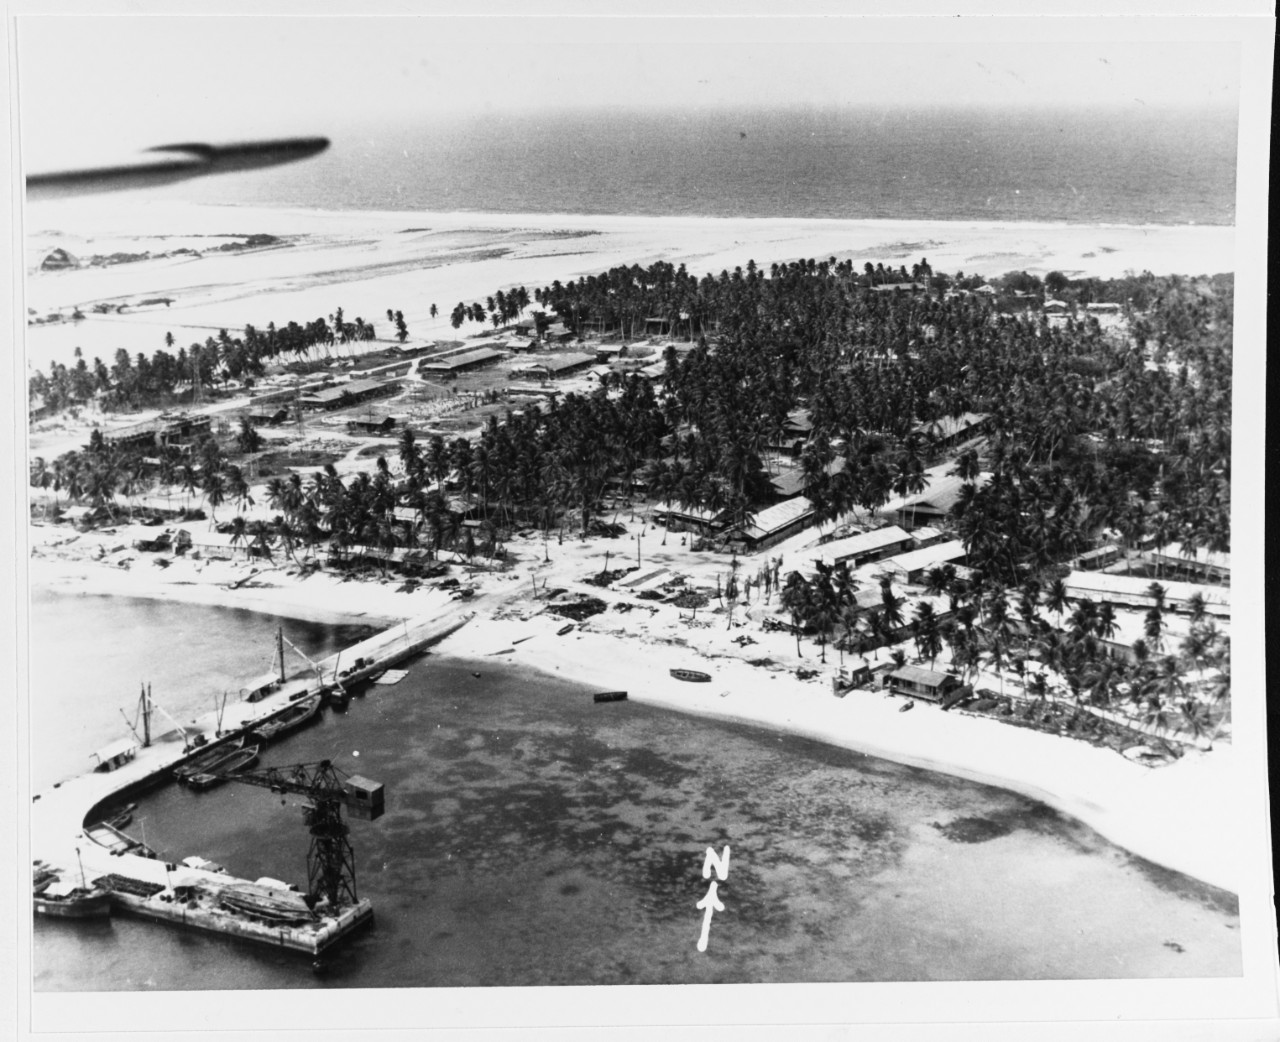 Kwajalein Operation, January-February 1944. 